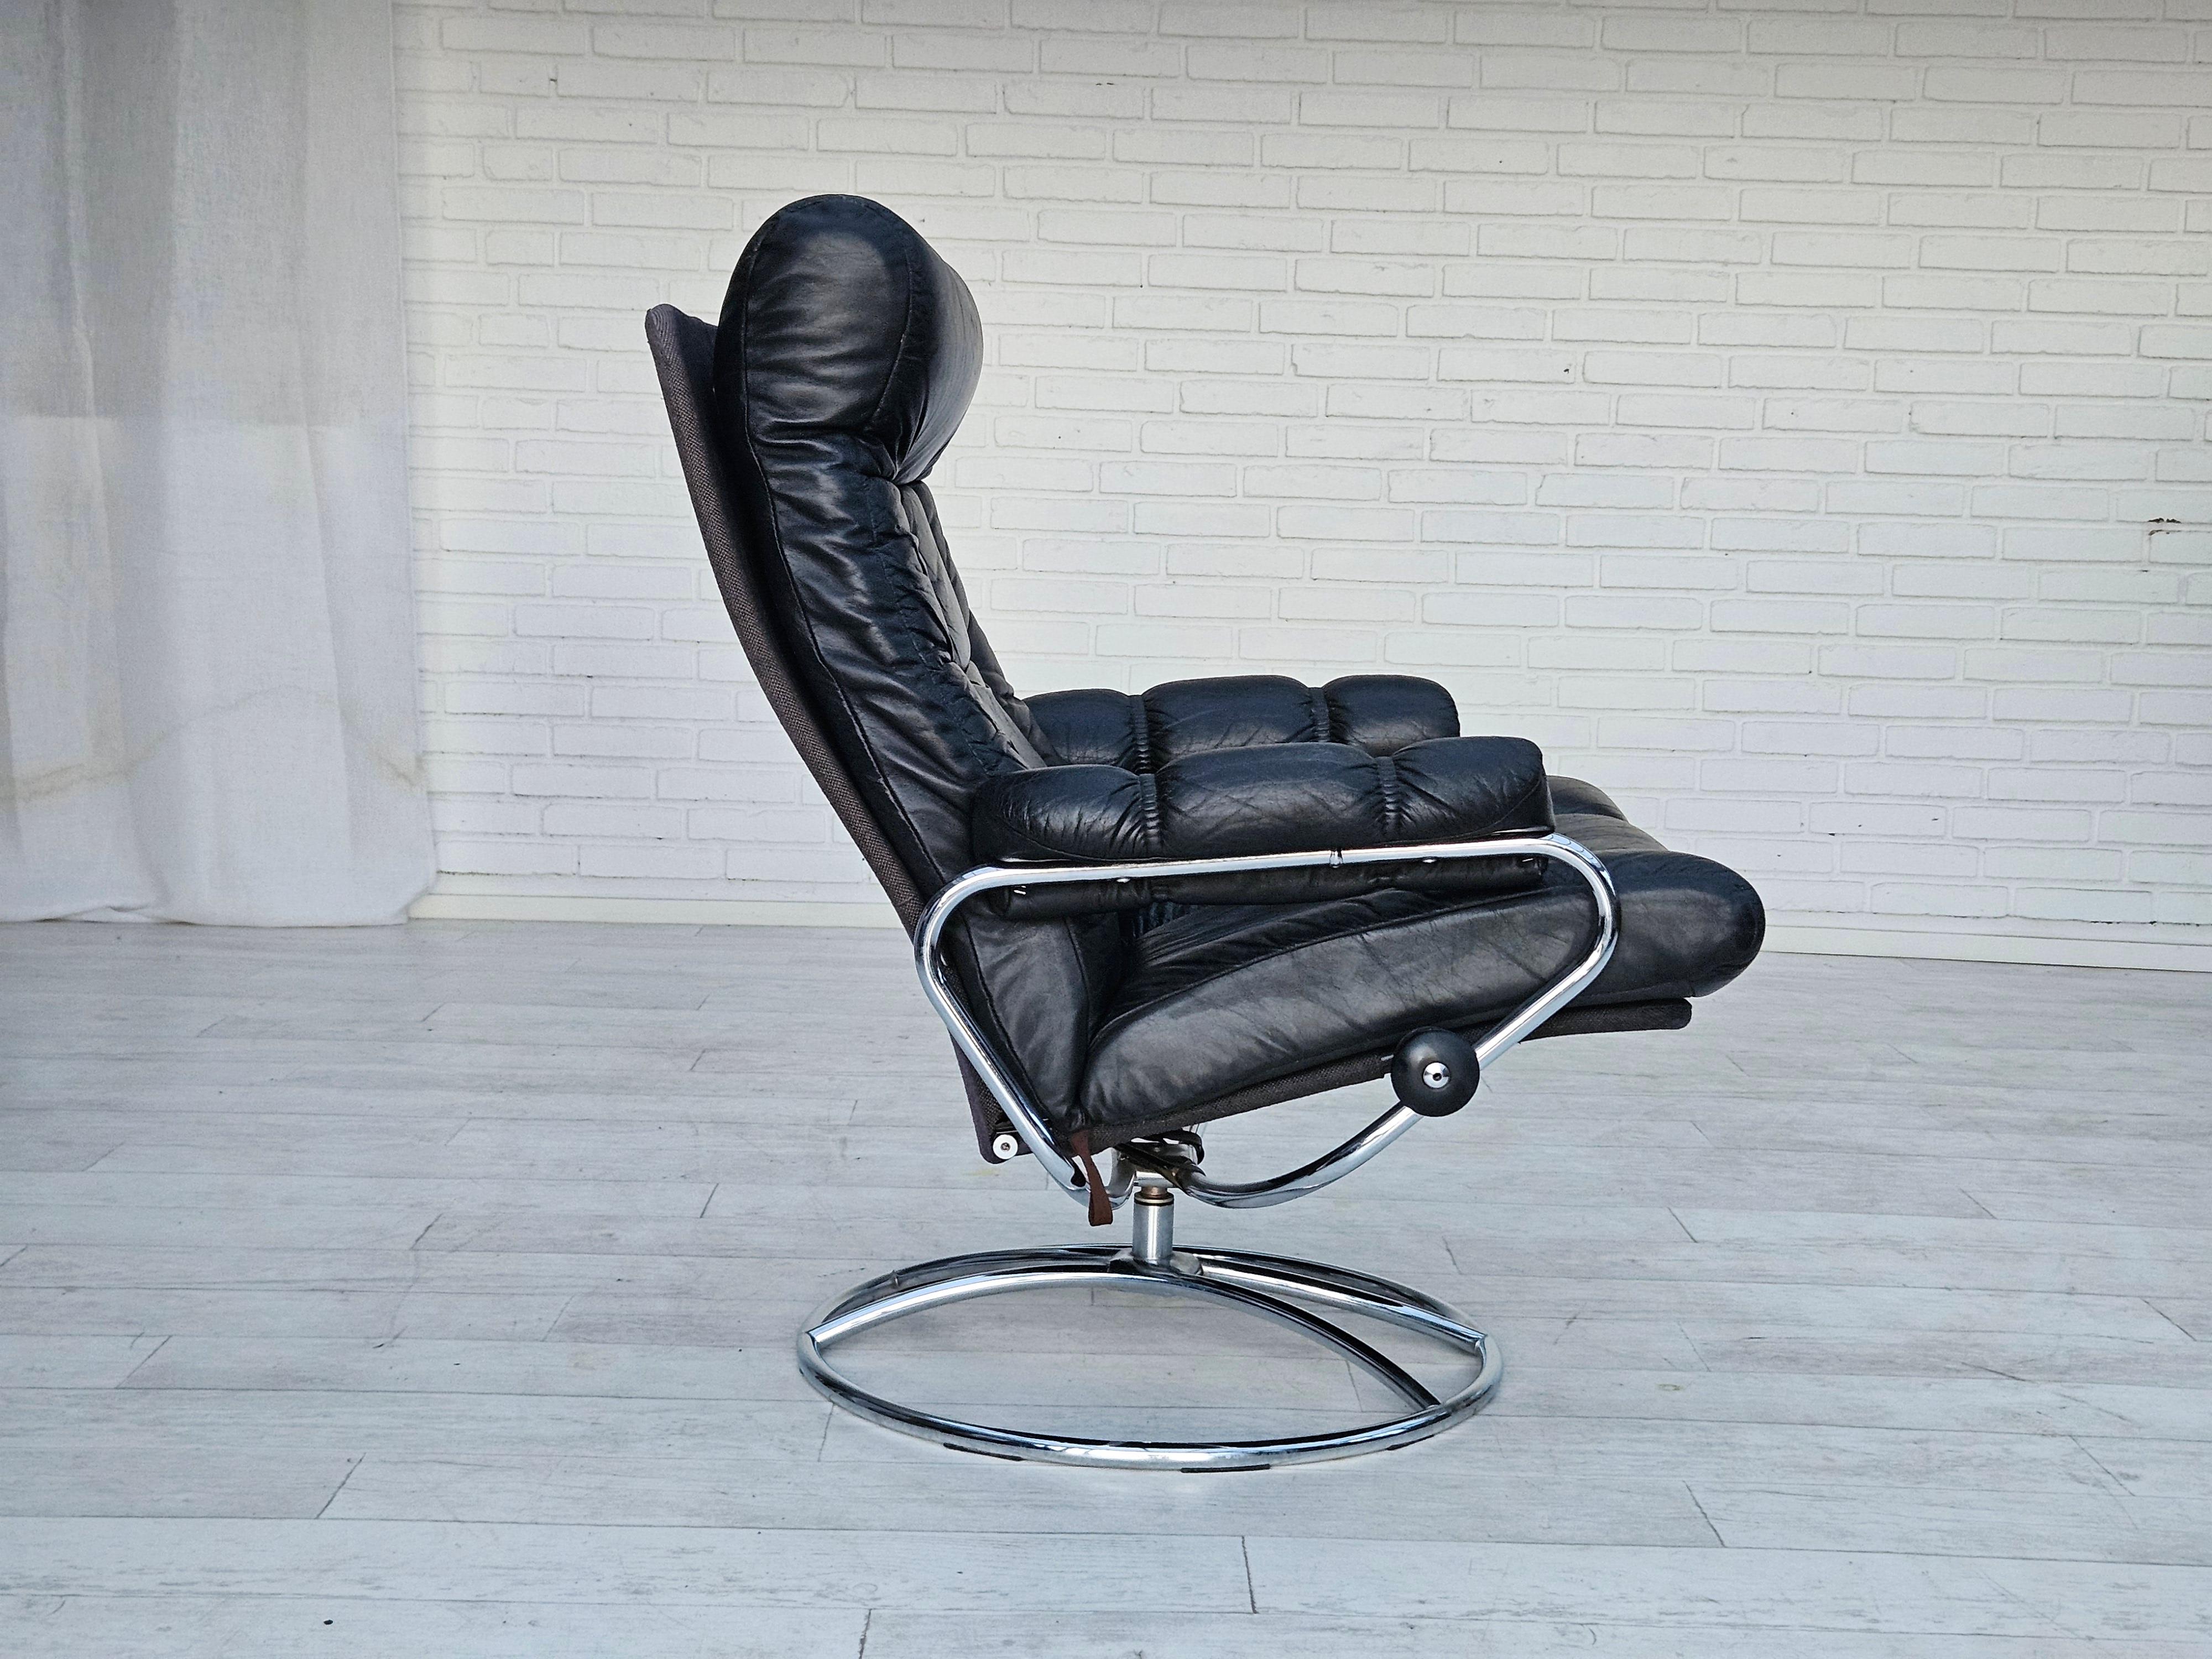 Scandinavian Modern 1970s, Norwegian relax swivel chair by Stressless, original very good condition.